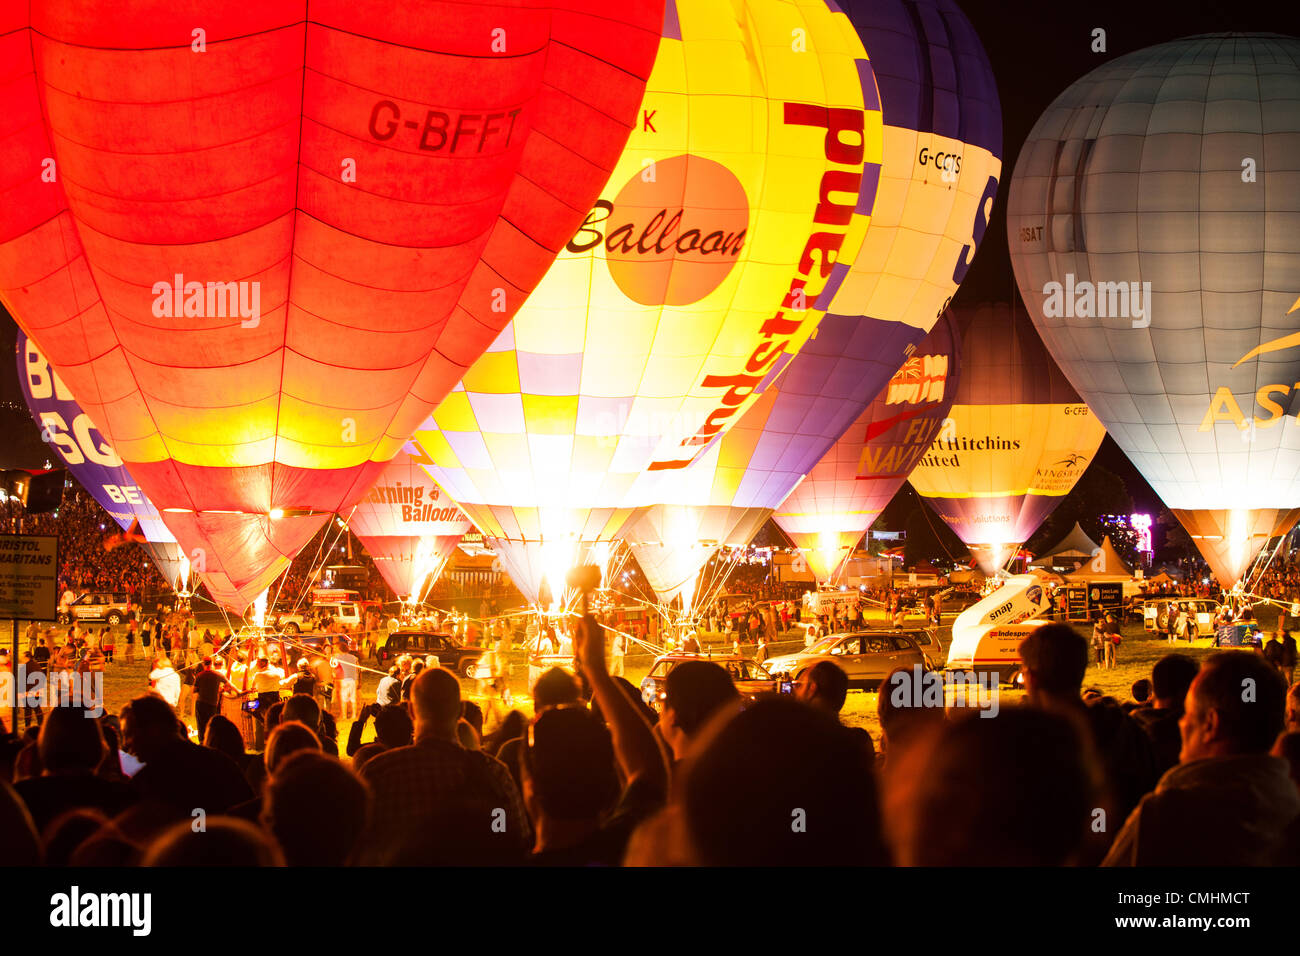 Bristol, UK, 11. August 2012. Ballons Leuchten für die jährliche "Nightglow" an der Bristol International Balloon Fiesta. Während die "Nightglow" haben einige 30 Ballons ihre Brenner gebrannt im Takt der Musik. Die Fiesta ist auf dem 850 Hektar großen Anwesen Anwesen von Ashton Gericht gehalten. Stockfoto